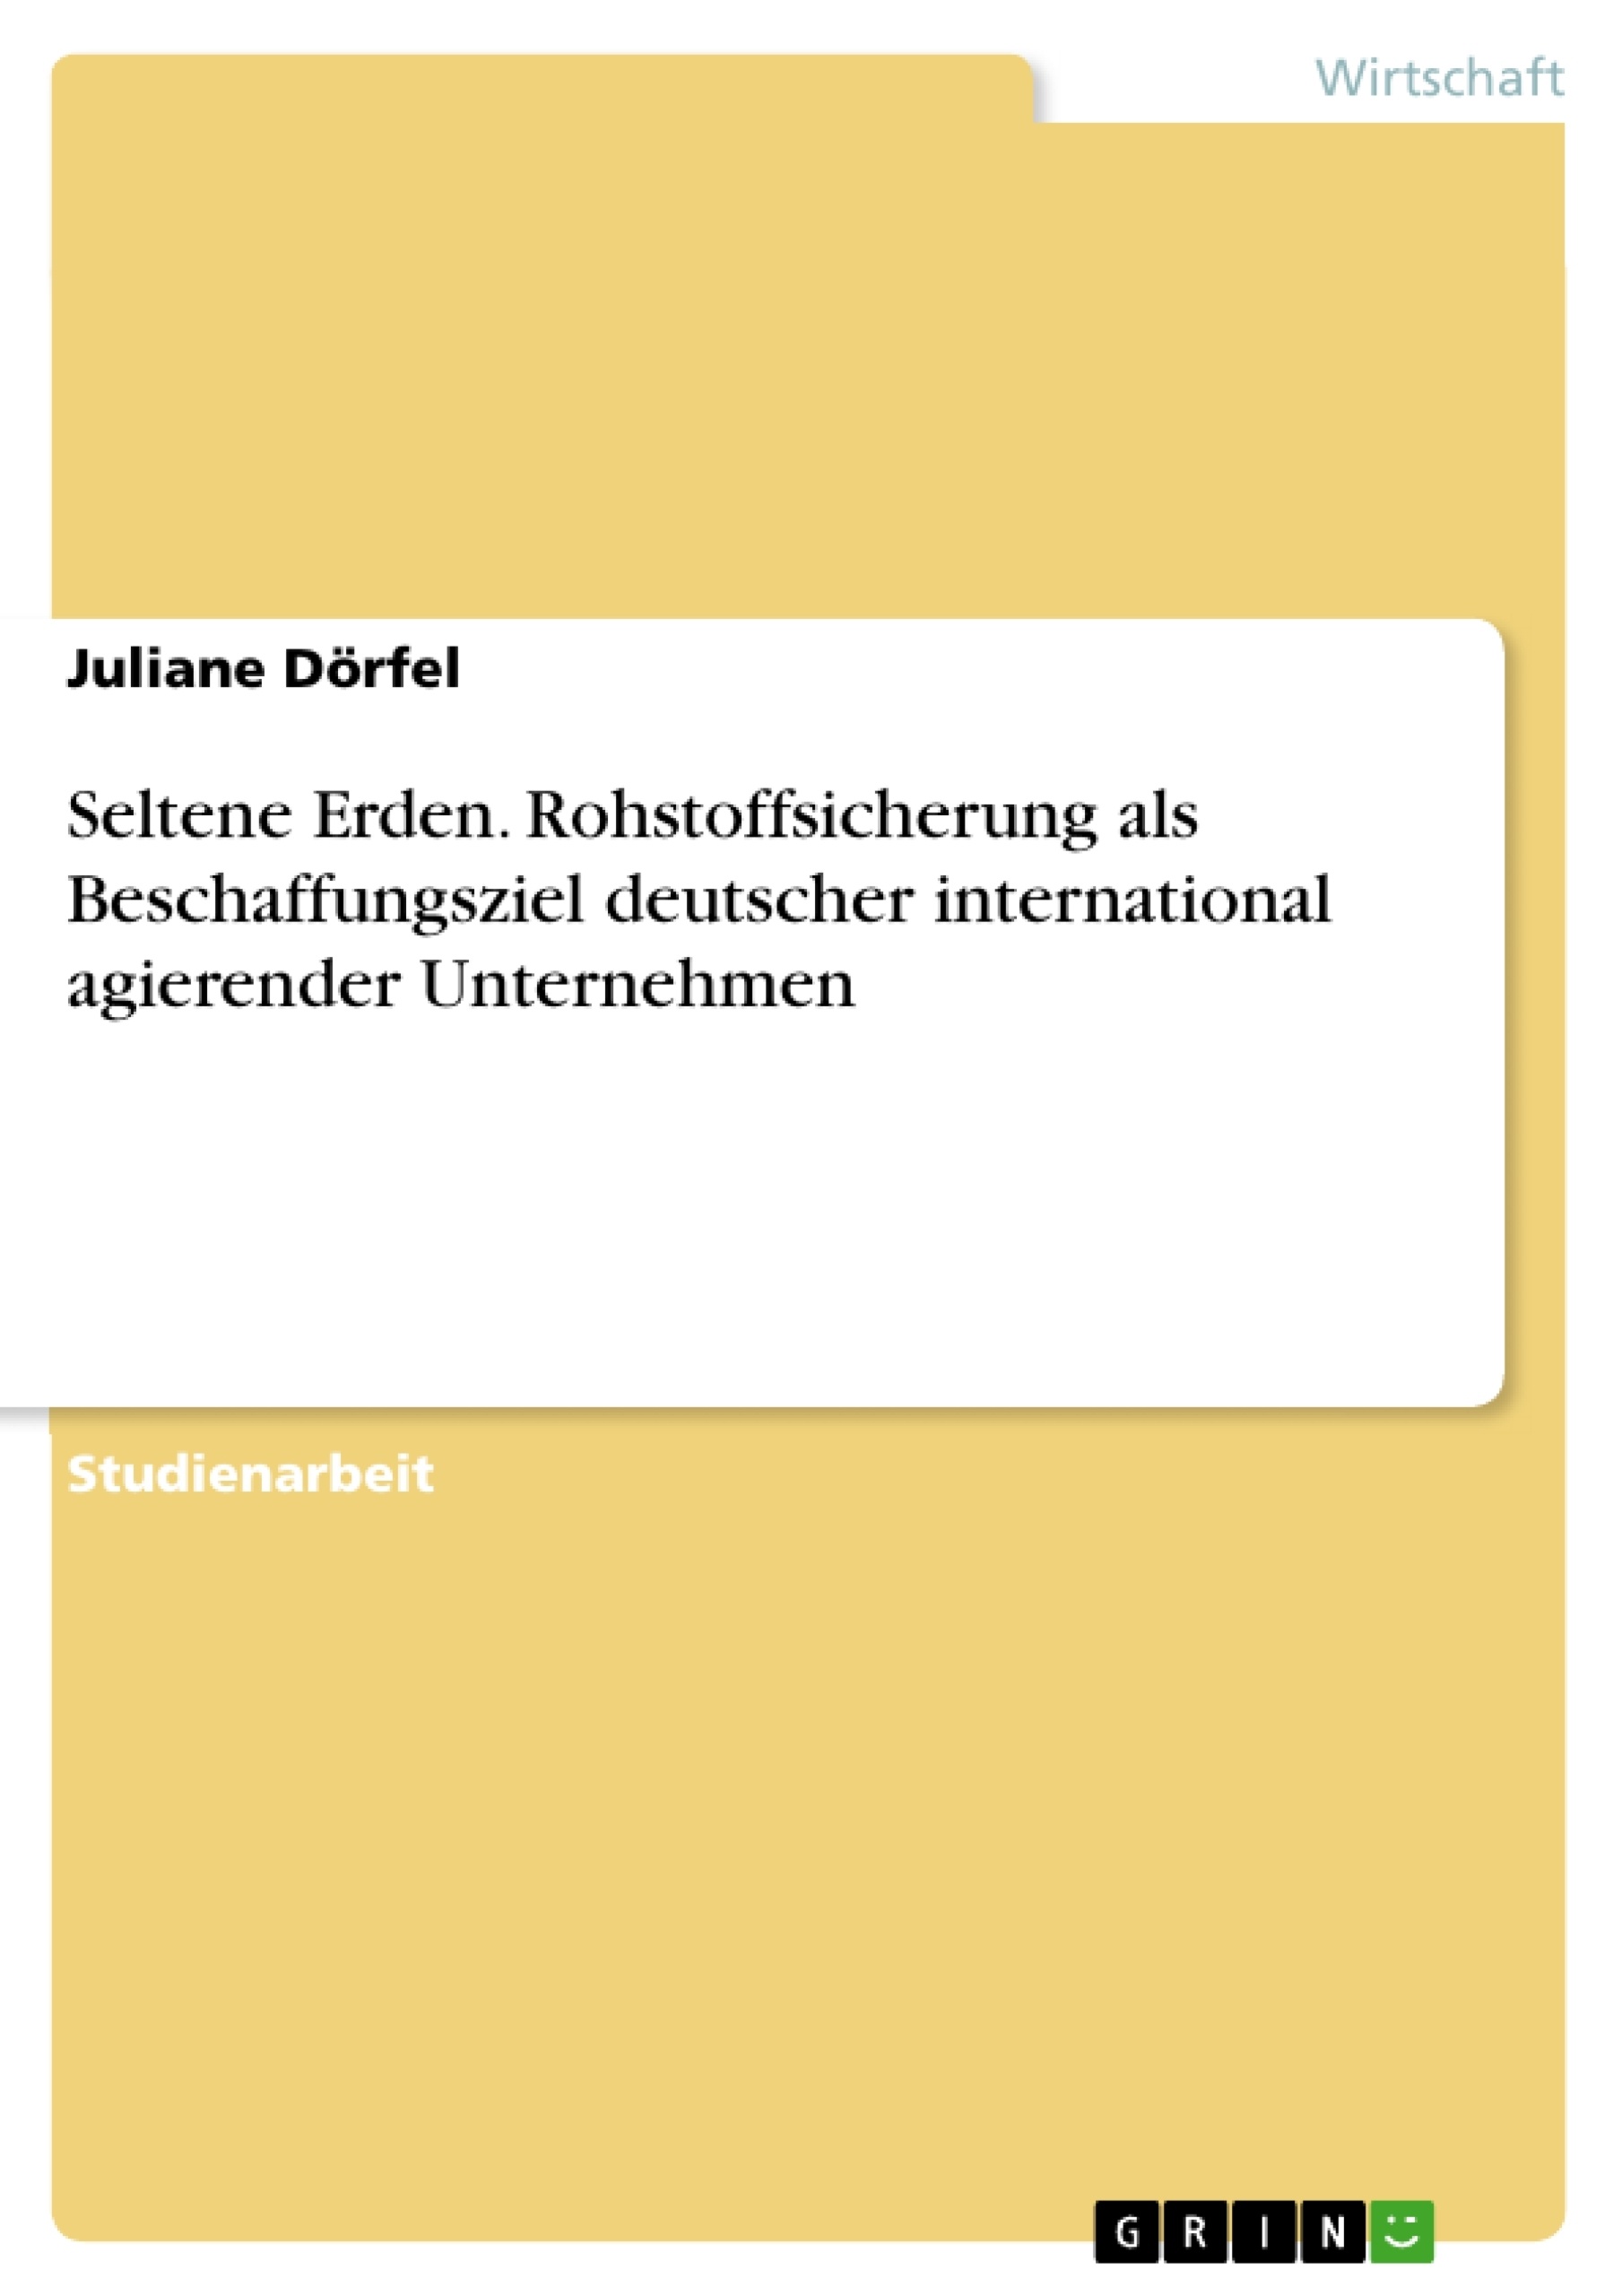 Titre: Seltene Erden. Rohstoffsicherung als Beschaffungsziel deutscher international agierender Unternehmen